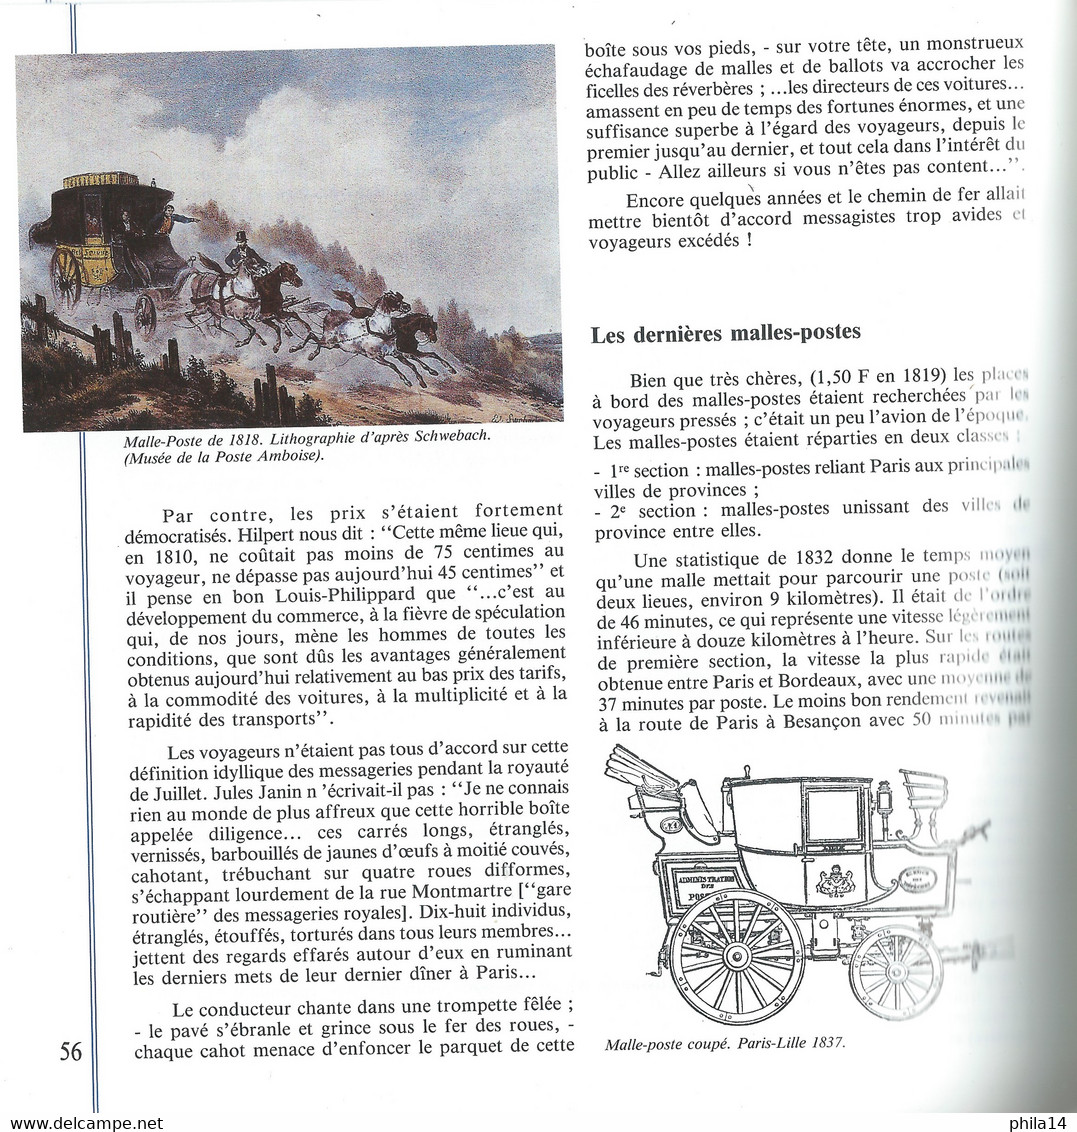 LIVRE DE L'EXPOSITION PHILATELIQUE MONDIALE / PHILEXFRANCE 89 PARIS / 95 PAGES - Briefmarkenaustellung